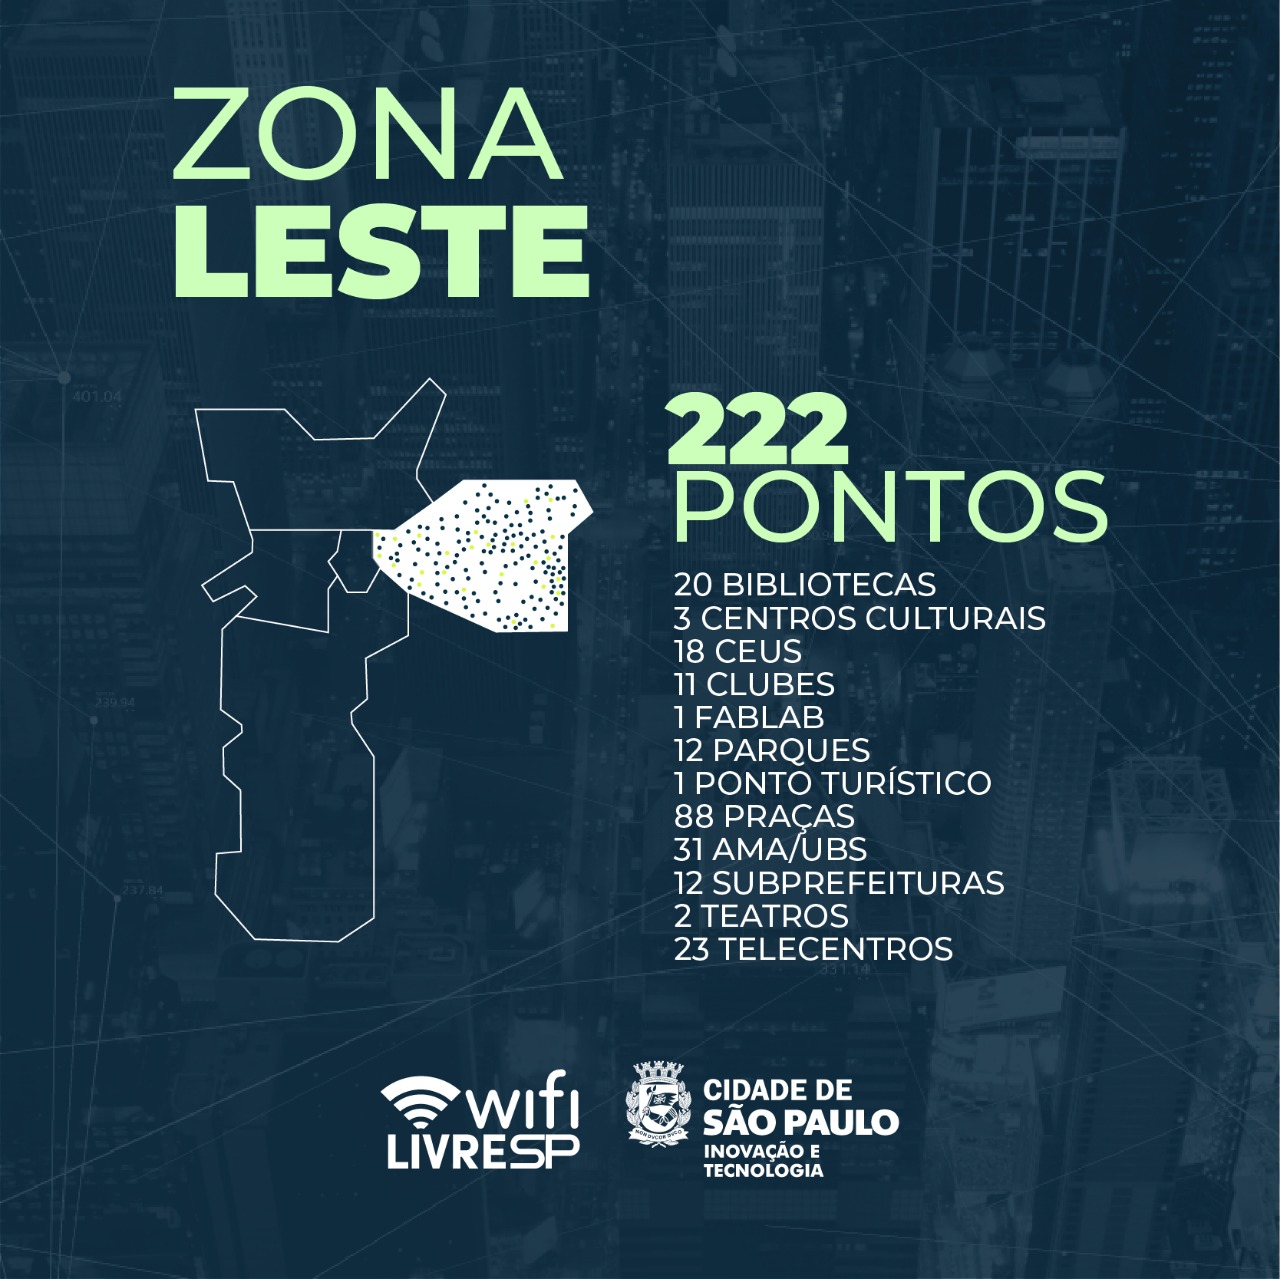 A imagem mostra o Mapa da Cidade de sção paulo com a parte da zona leste em destaque com diversos pontinhos nelas, indicando os 222 pontos de wifi